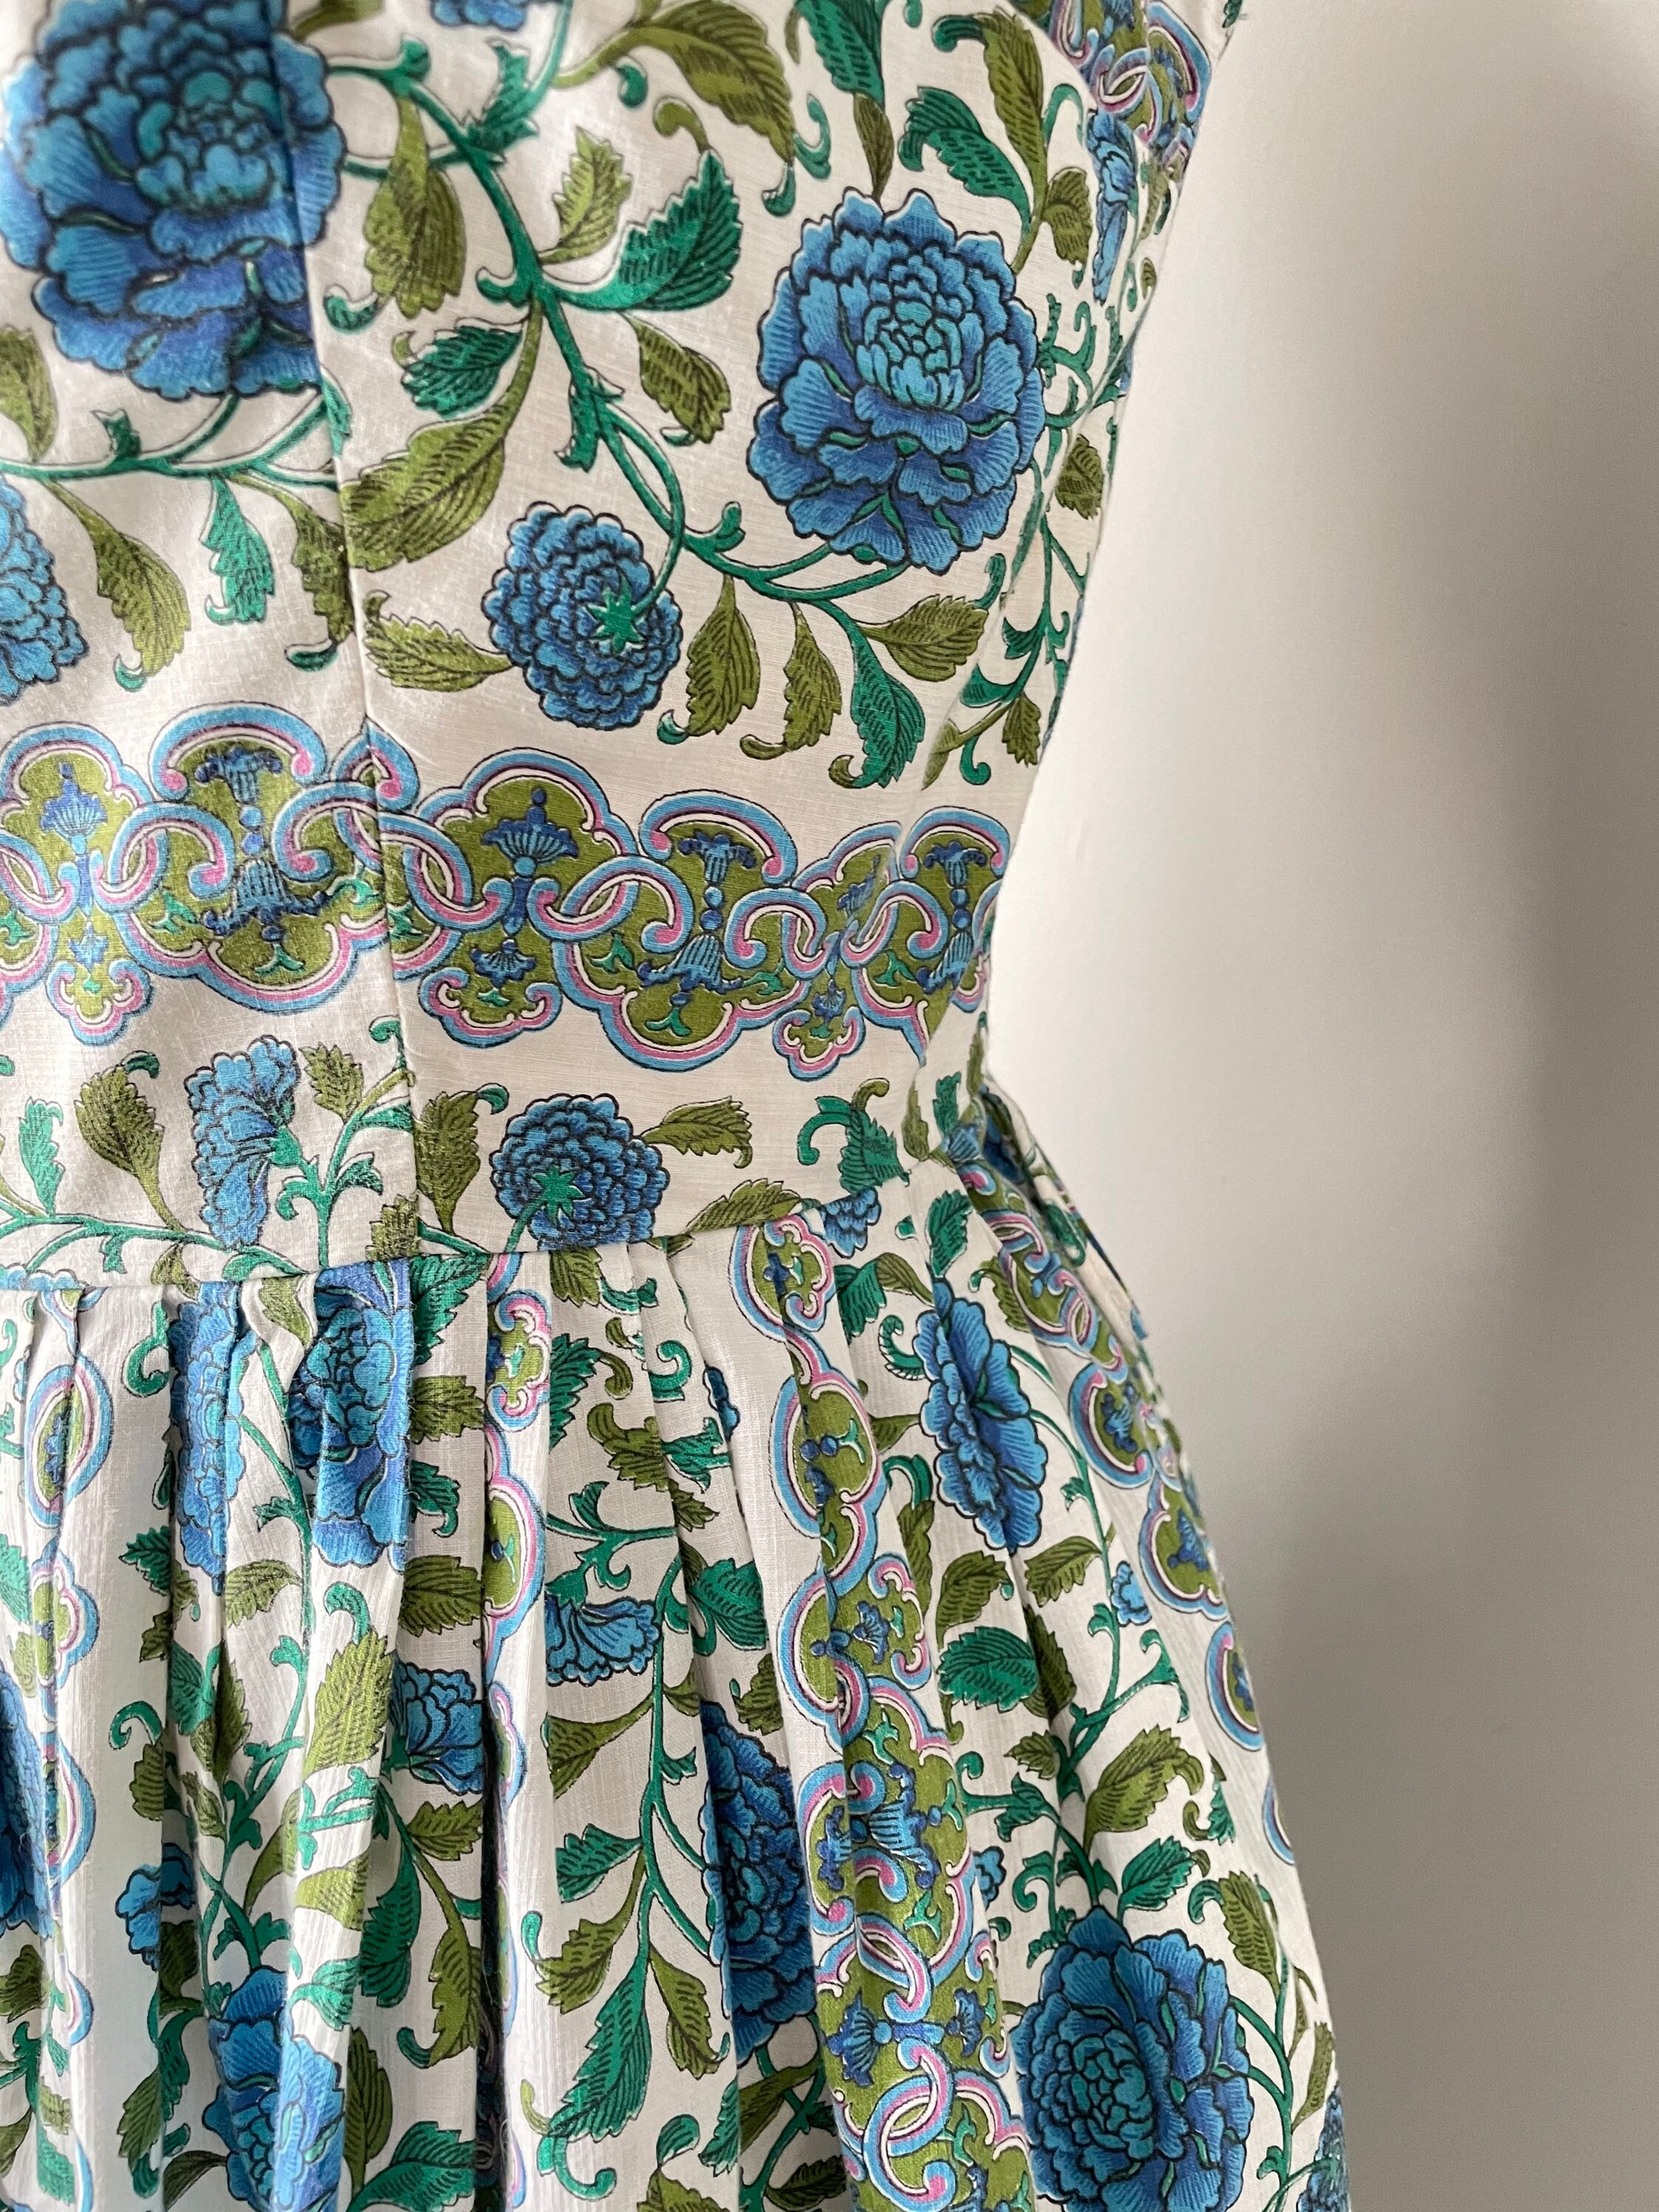 1950s Dress Cotton Floral Full Skirt M | Etsy